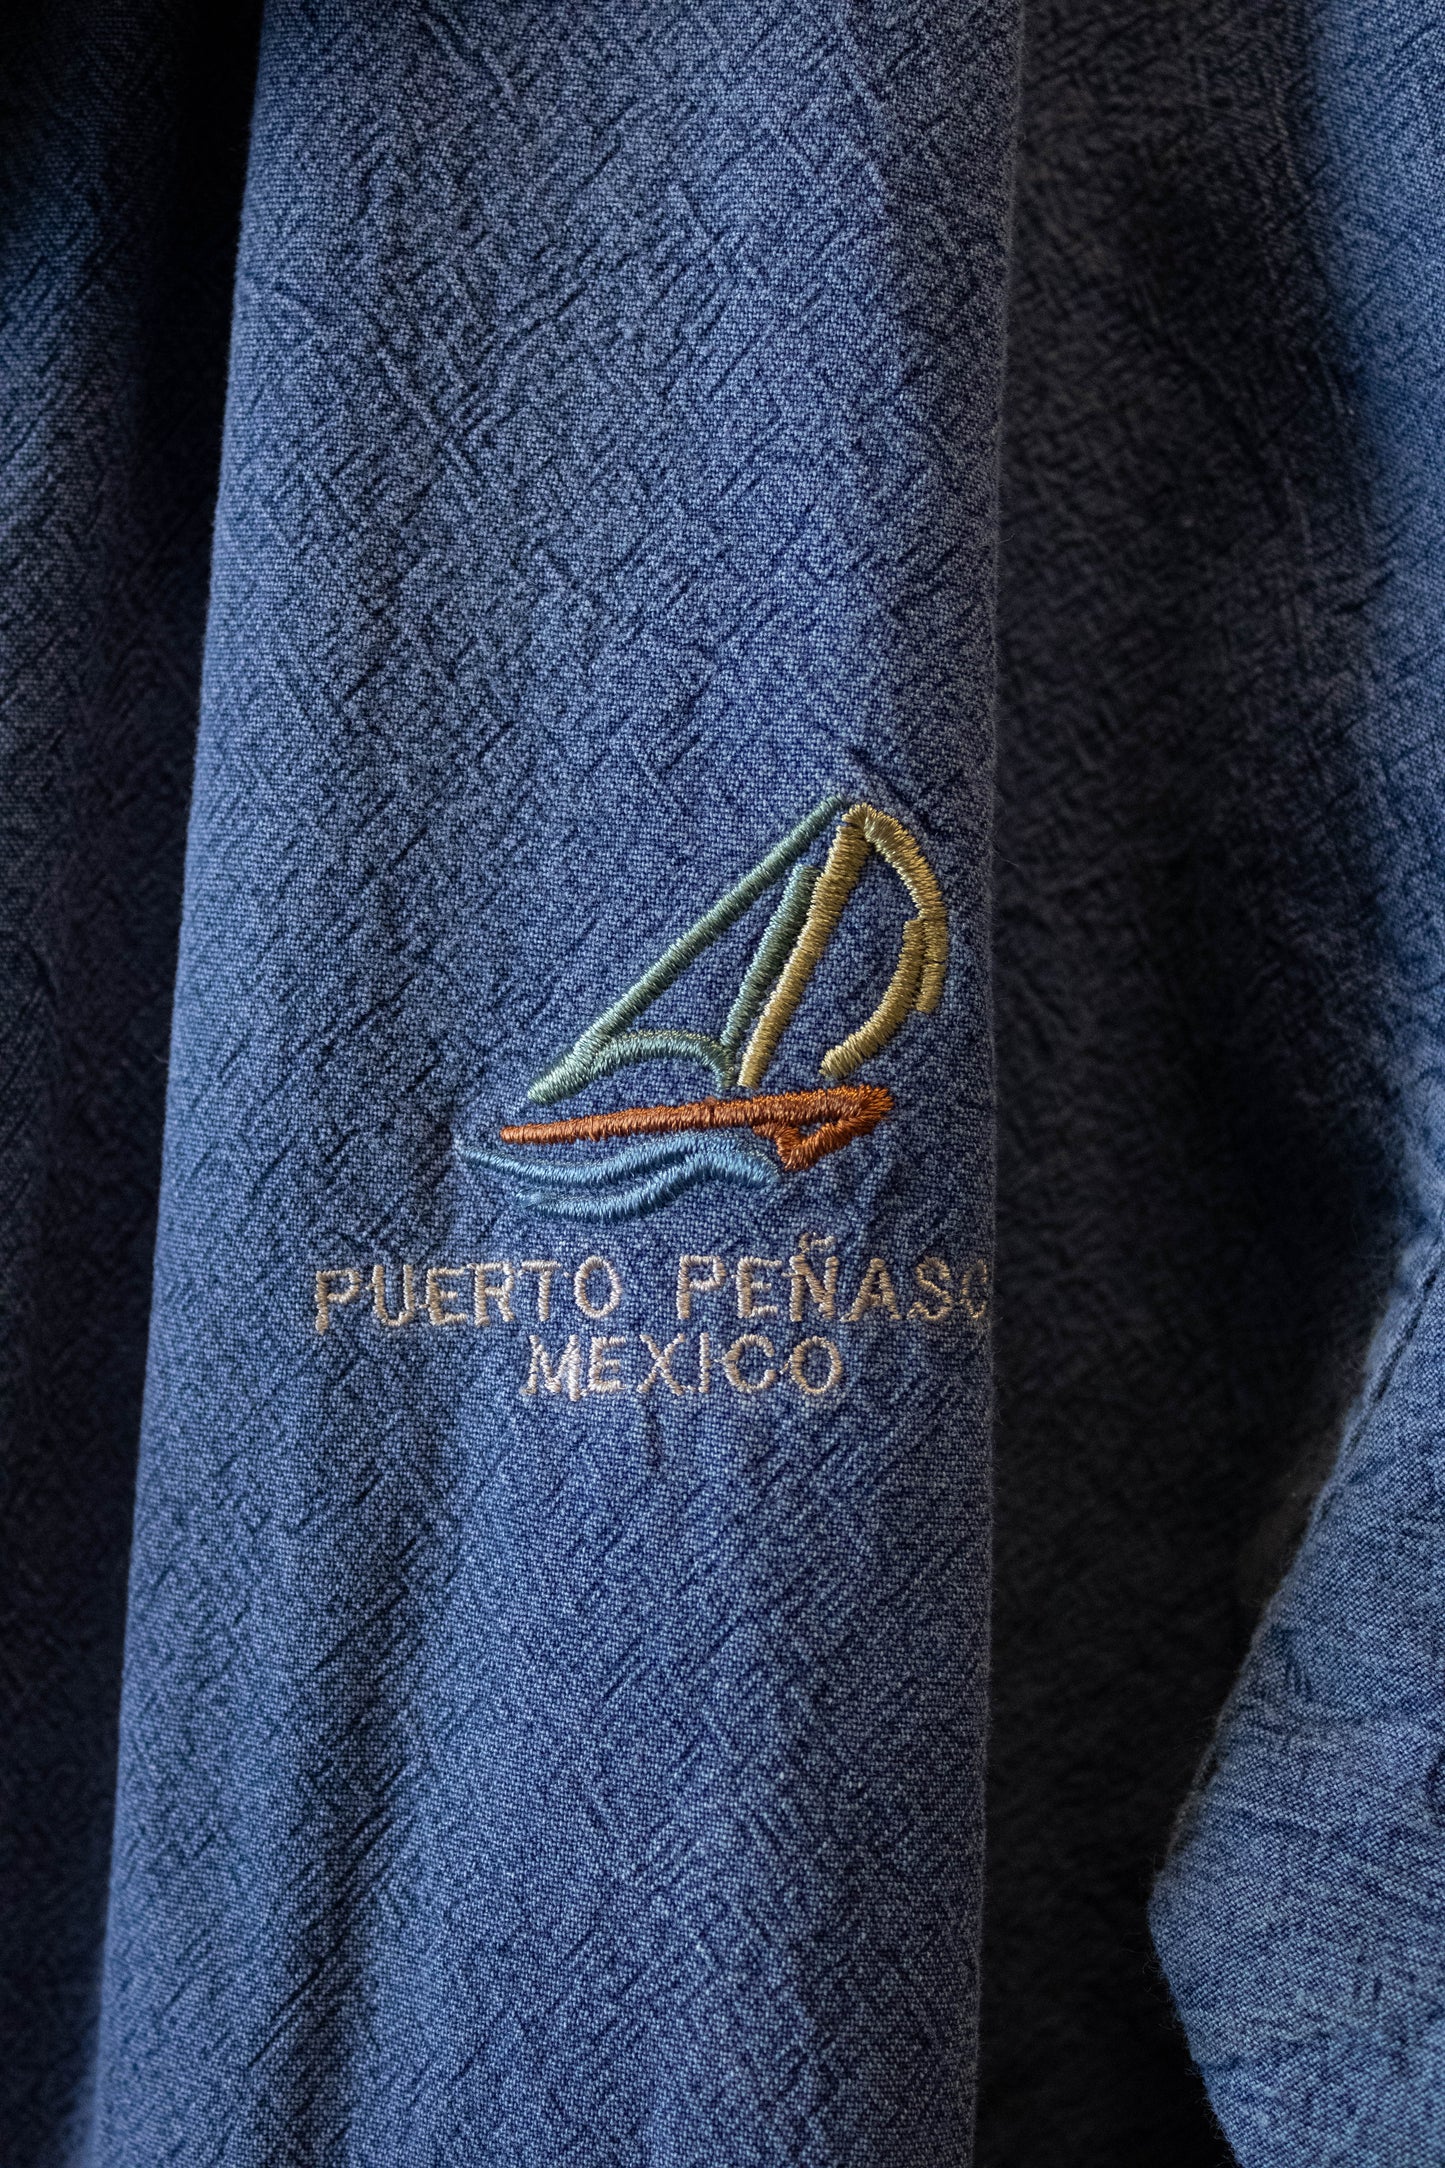 Puerto Penaso Mexico Jacket : L